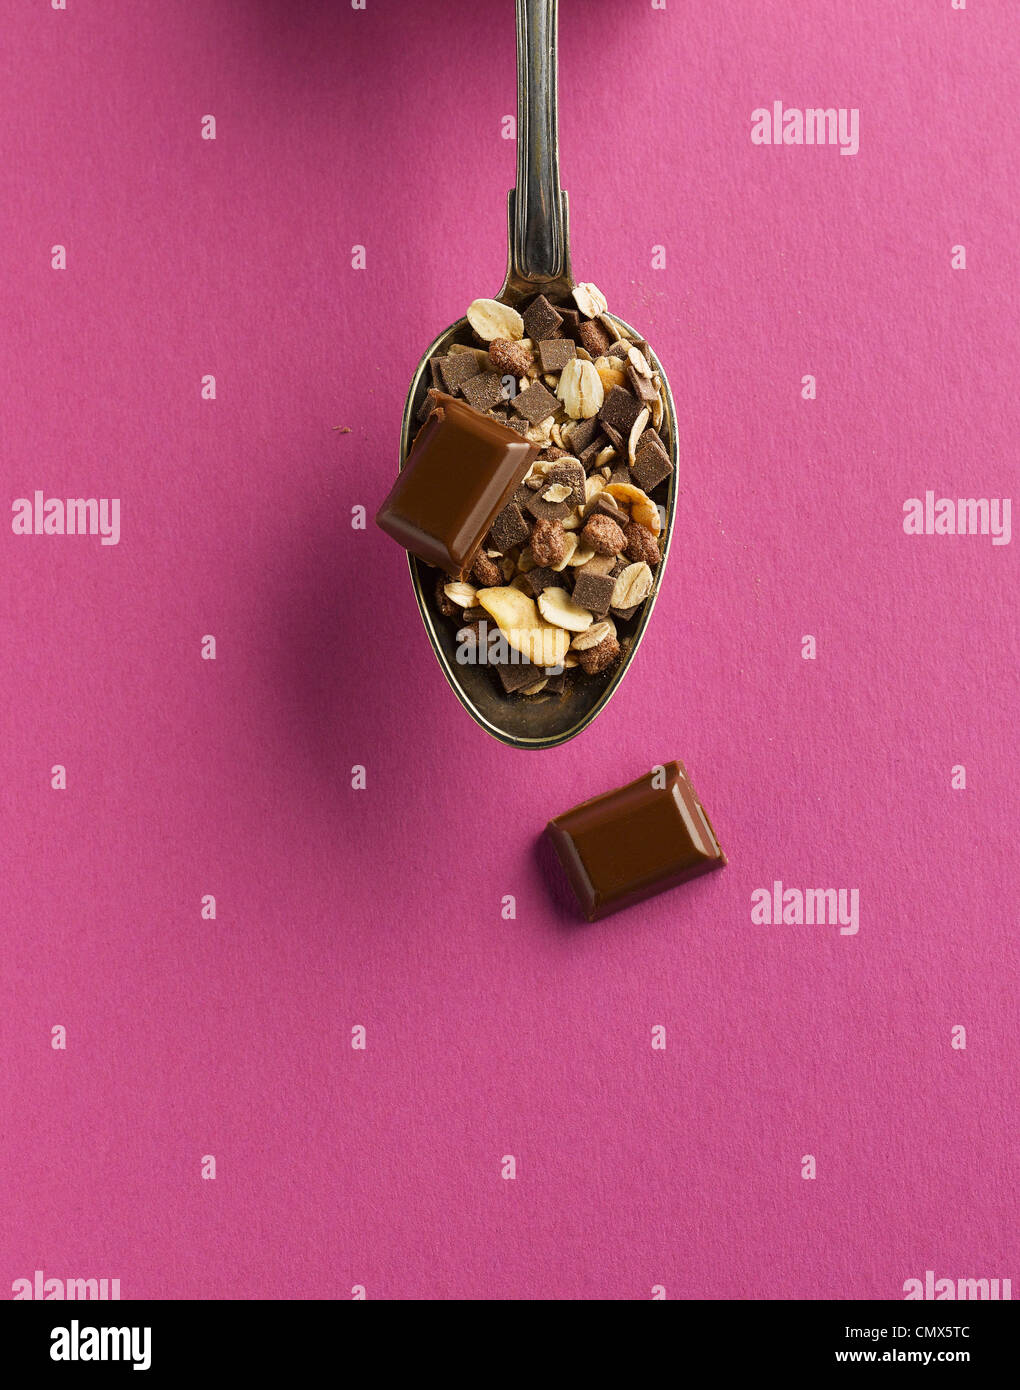 Los cereales y el chocolate en una cuchara sobre fondo de color rosa Foto de stock